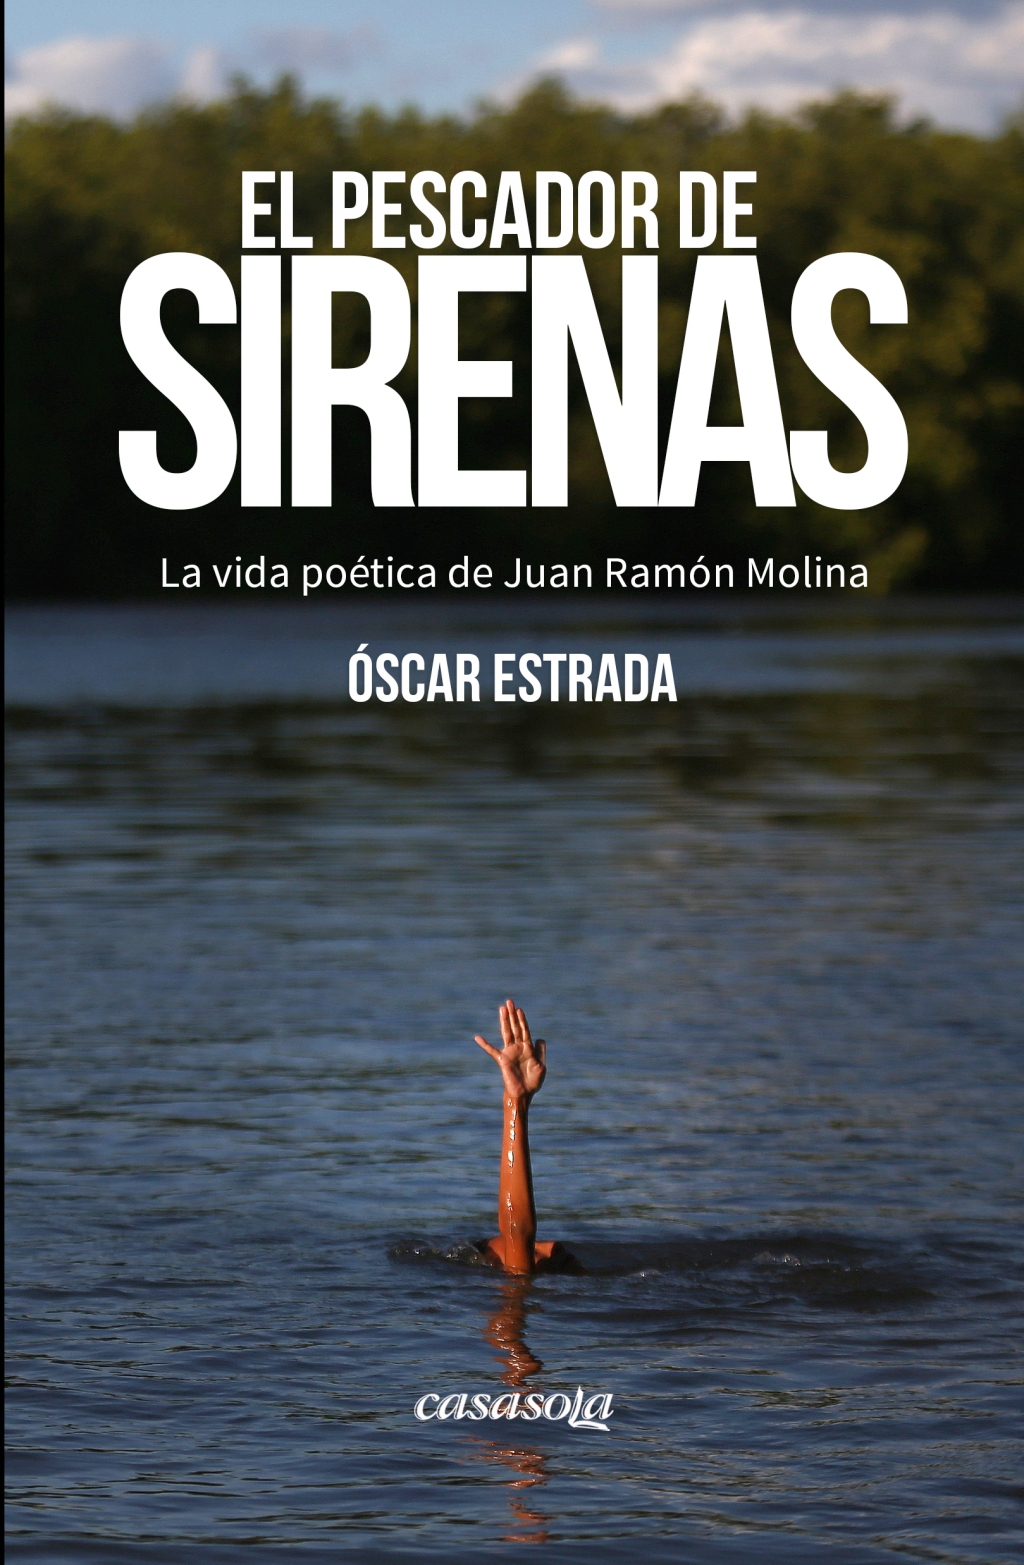 «El pescador de sirenas» de Óscar Estrada